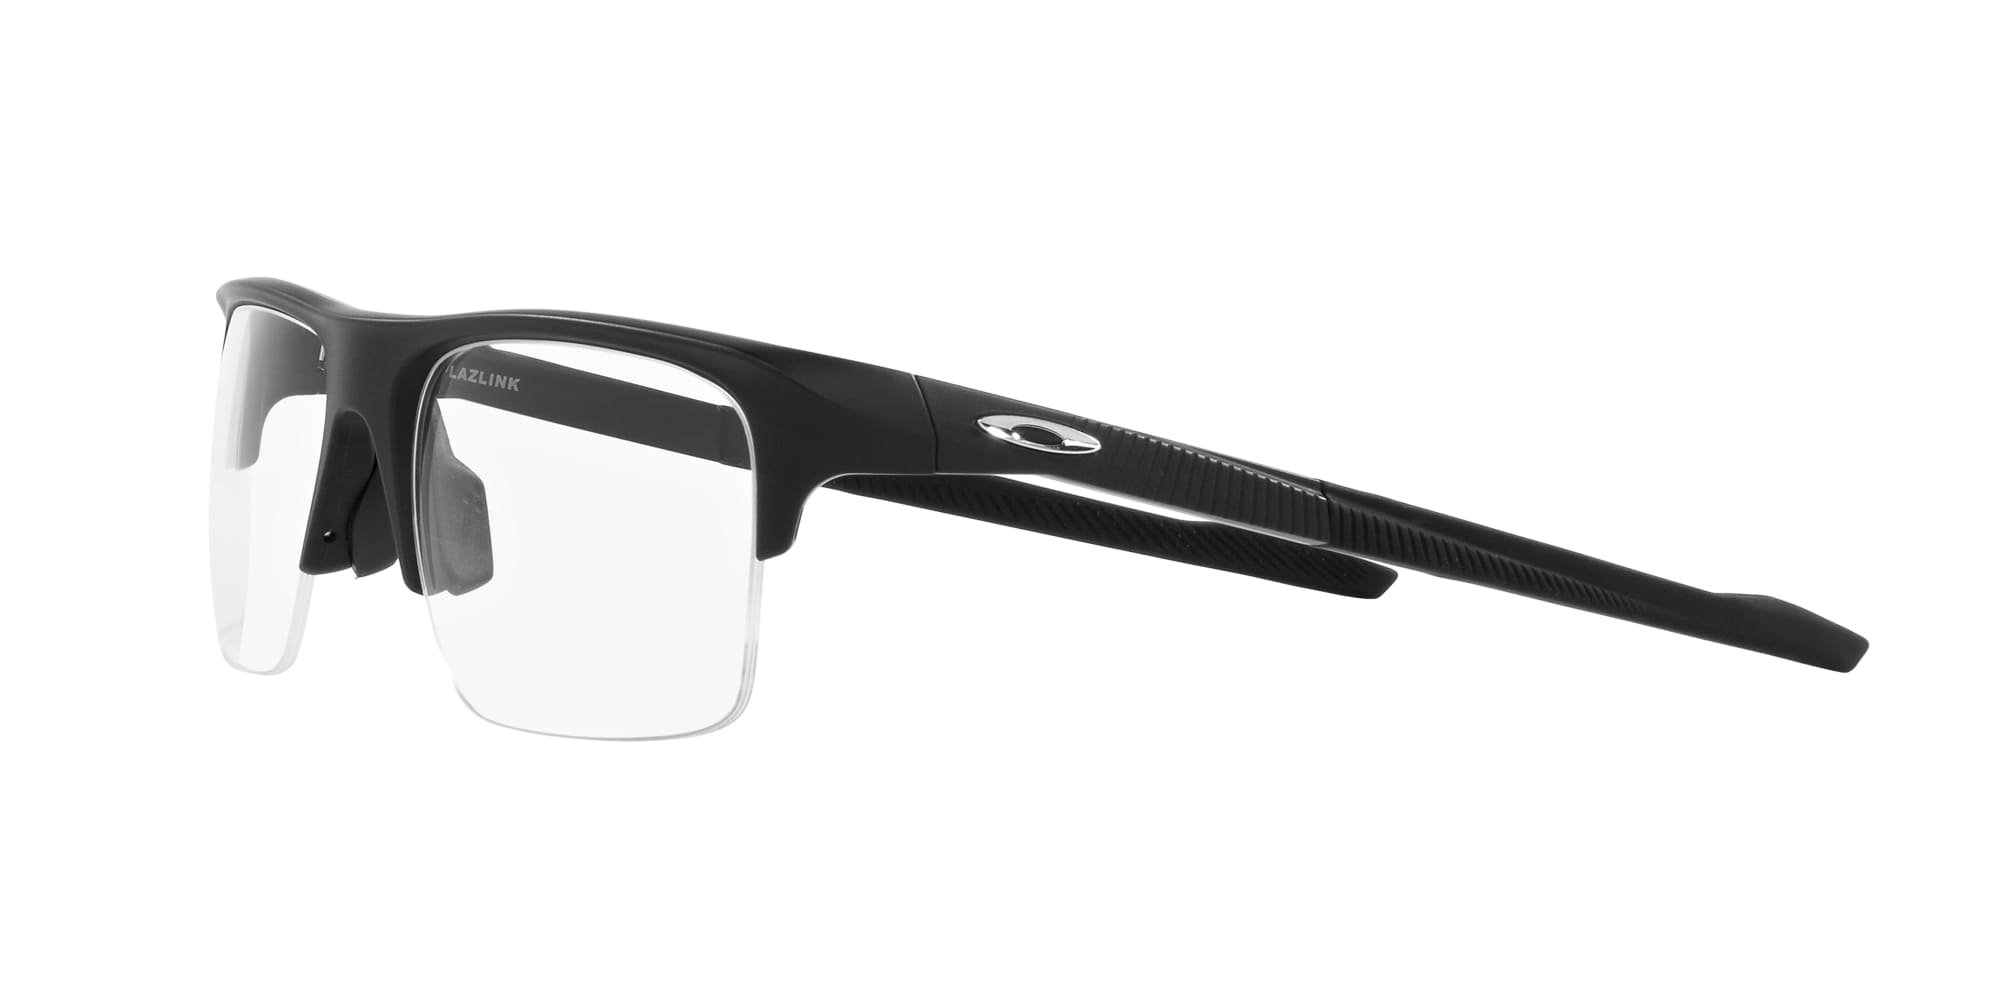 Das Bild zeigt die Korrektionsbrille OX8061 806101 von der Marke Oakley  in  schwarz satiniert.